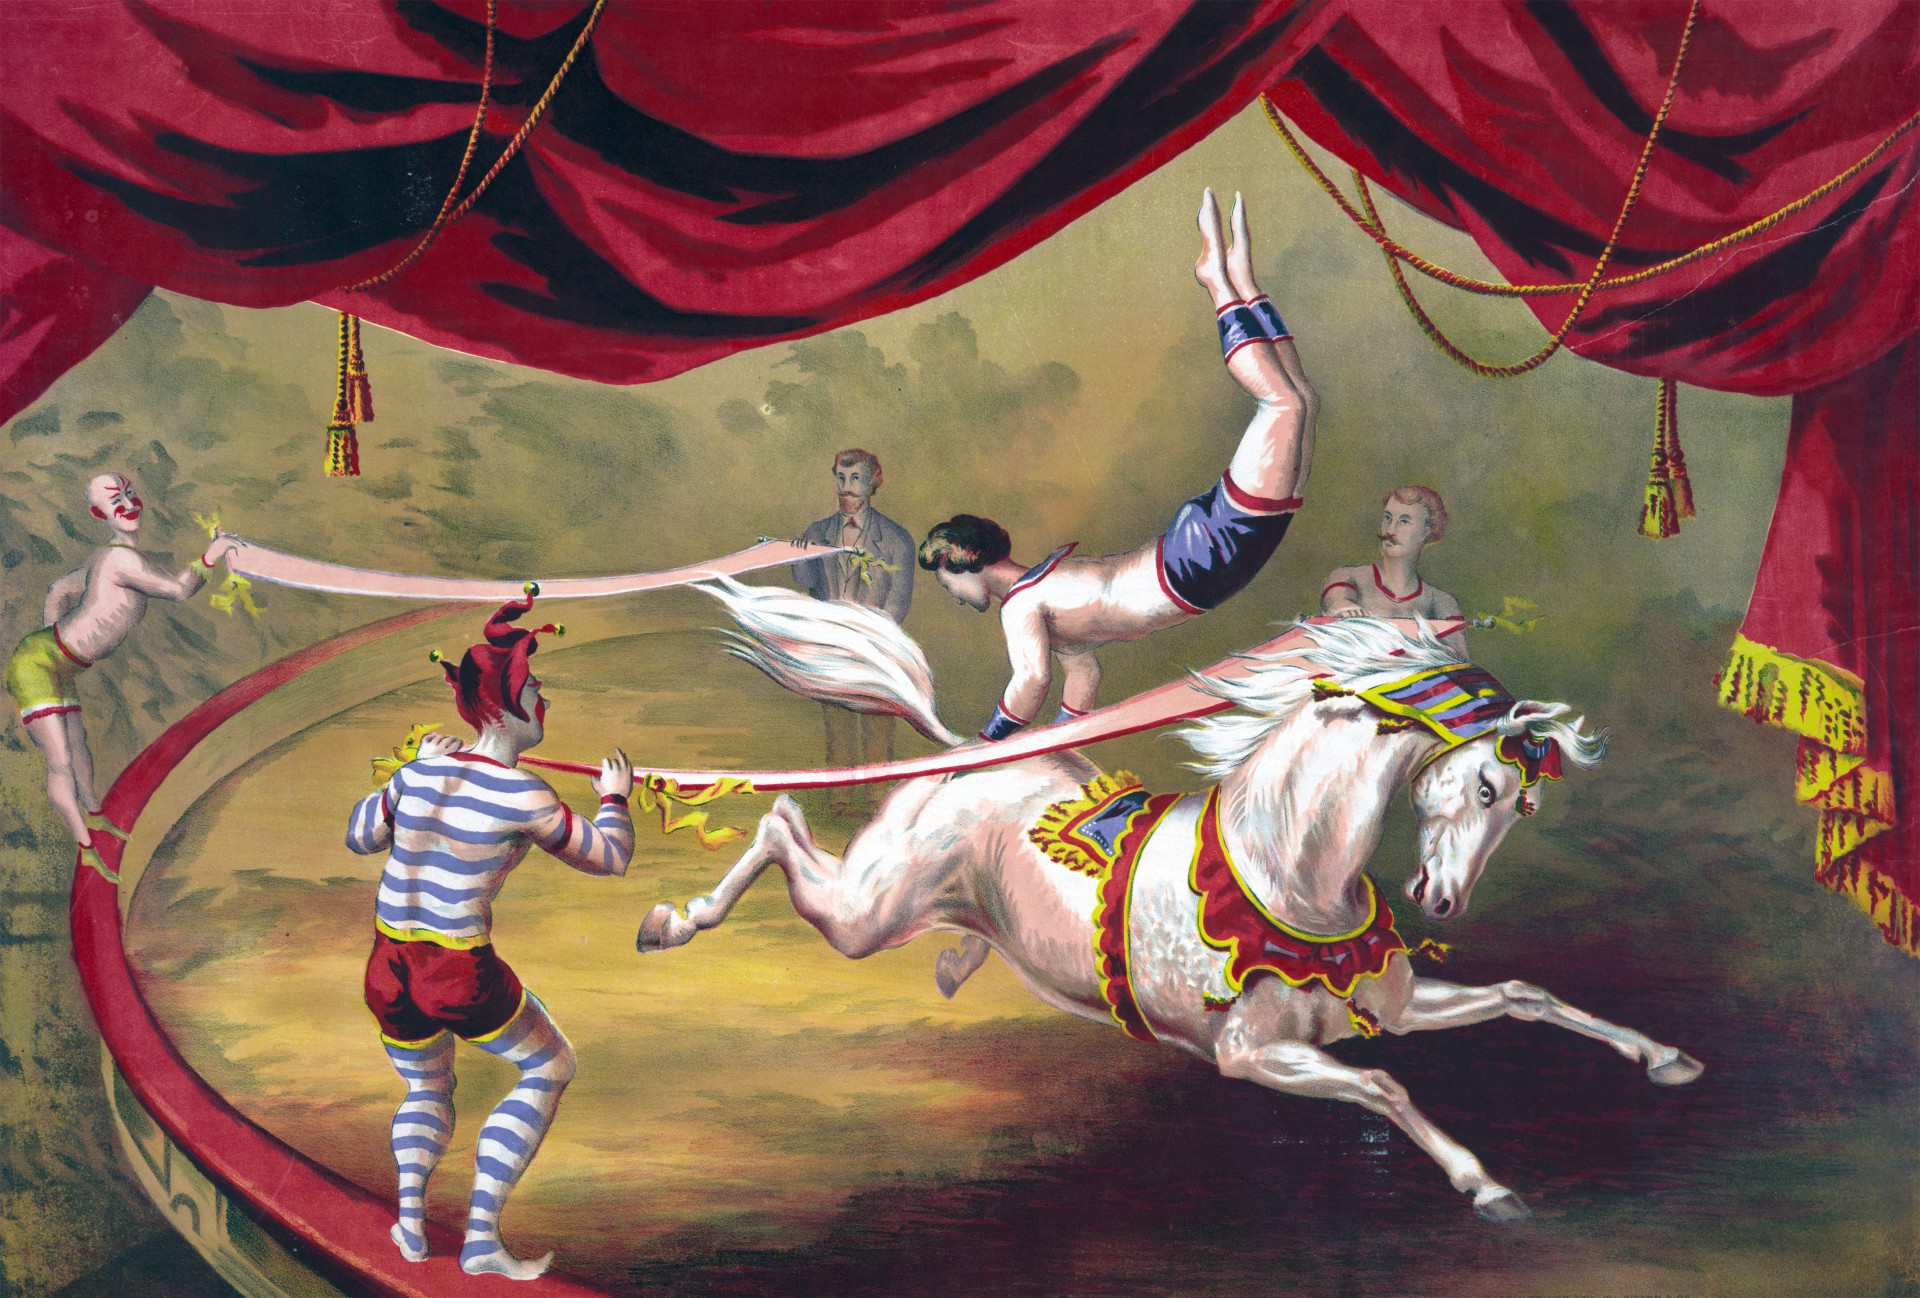 Pintura do cavalo do circo Acrobat